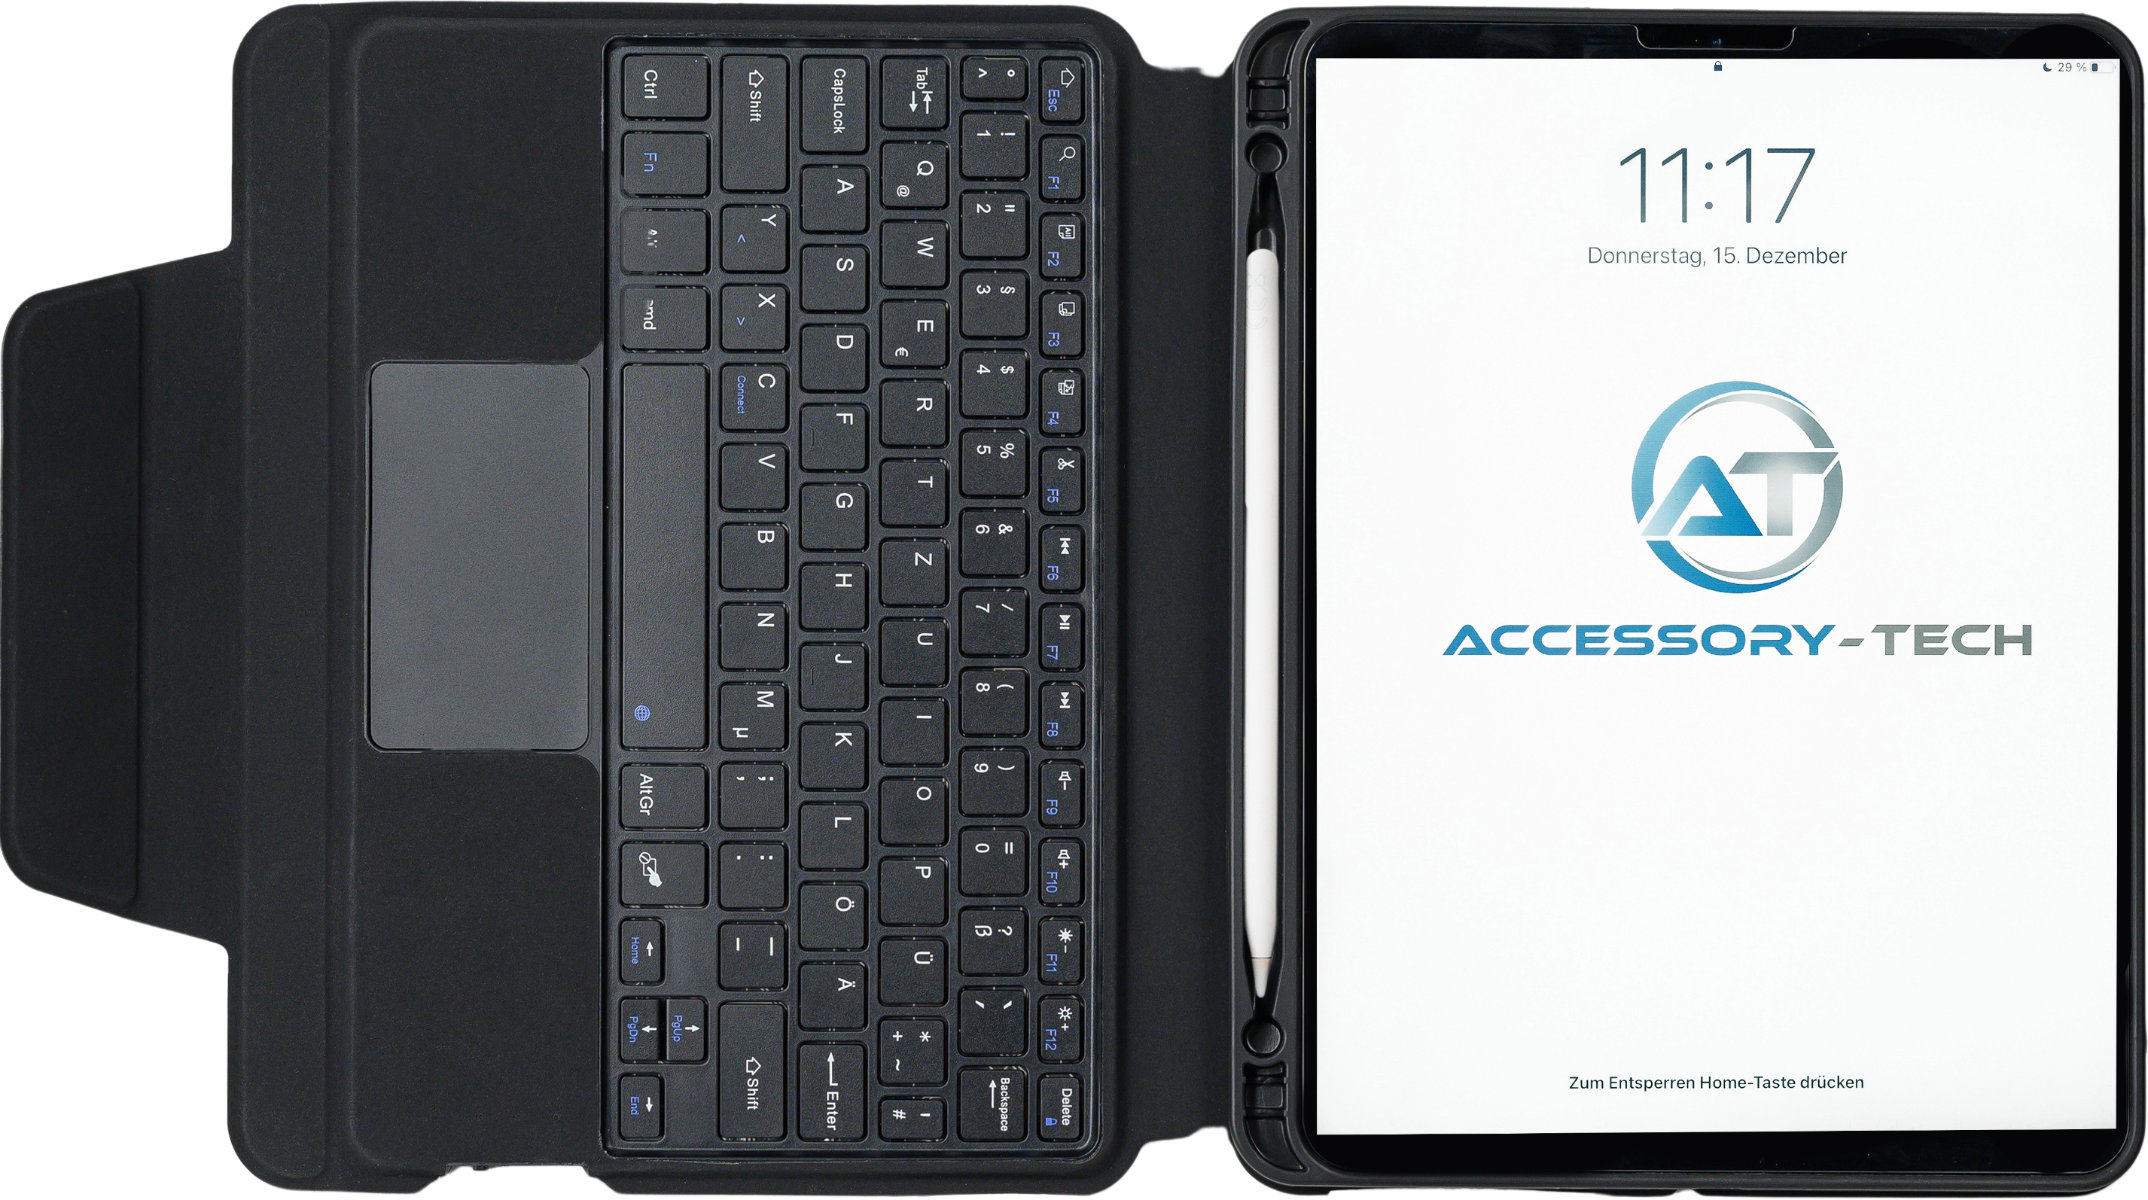 Highlight der Tastaturschutzhülle ist das abnehmbare innere Case, womit das Apple iPad schnell und bequem auch einzeln genutzt werden kann. Die Schutzhülle ist mit einem innenliegenden Stifthalter ausgestattet, in dem der Apple Pencil zuverlässig aufbewah